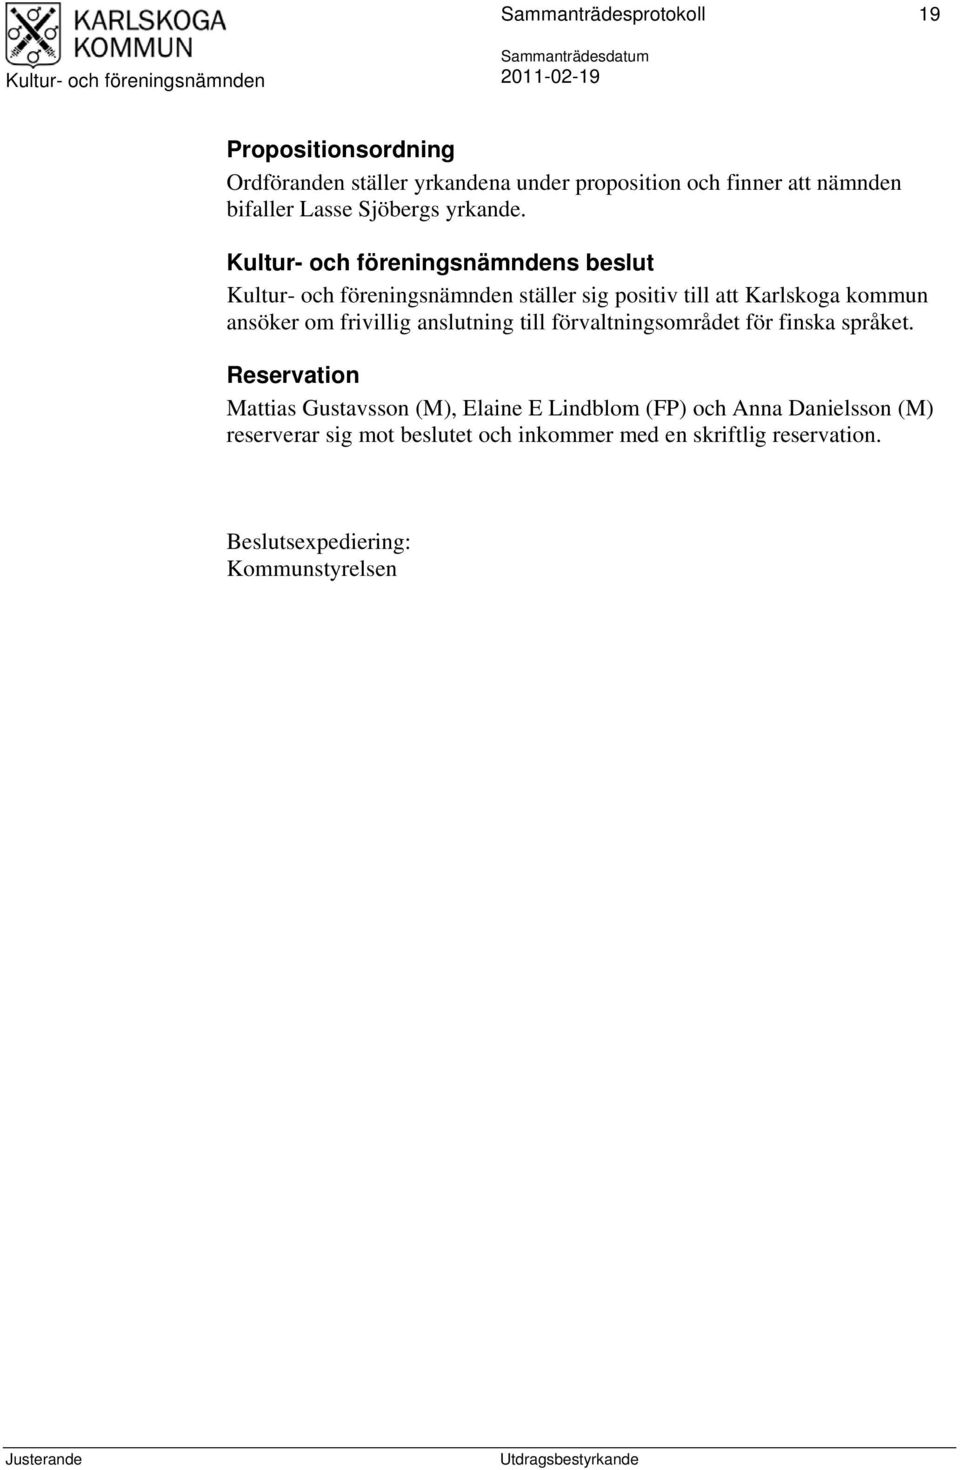 s beslut ställer sig positiv till att Karlskoga kommun ansöker om frivillig anslutning till förvaltningsområdet för